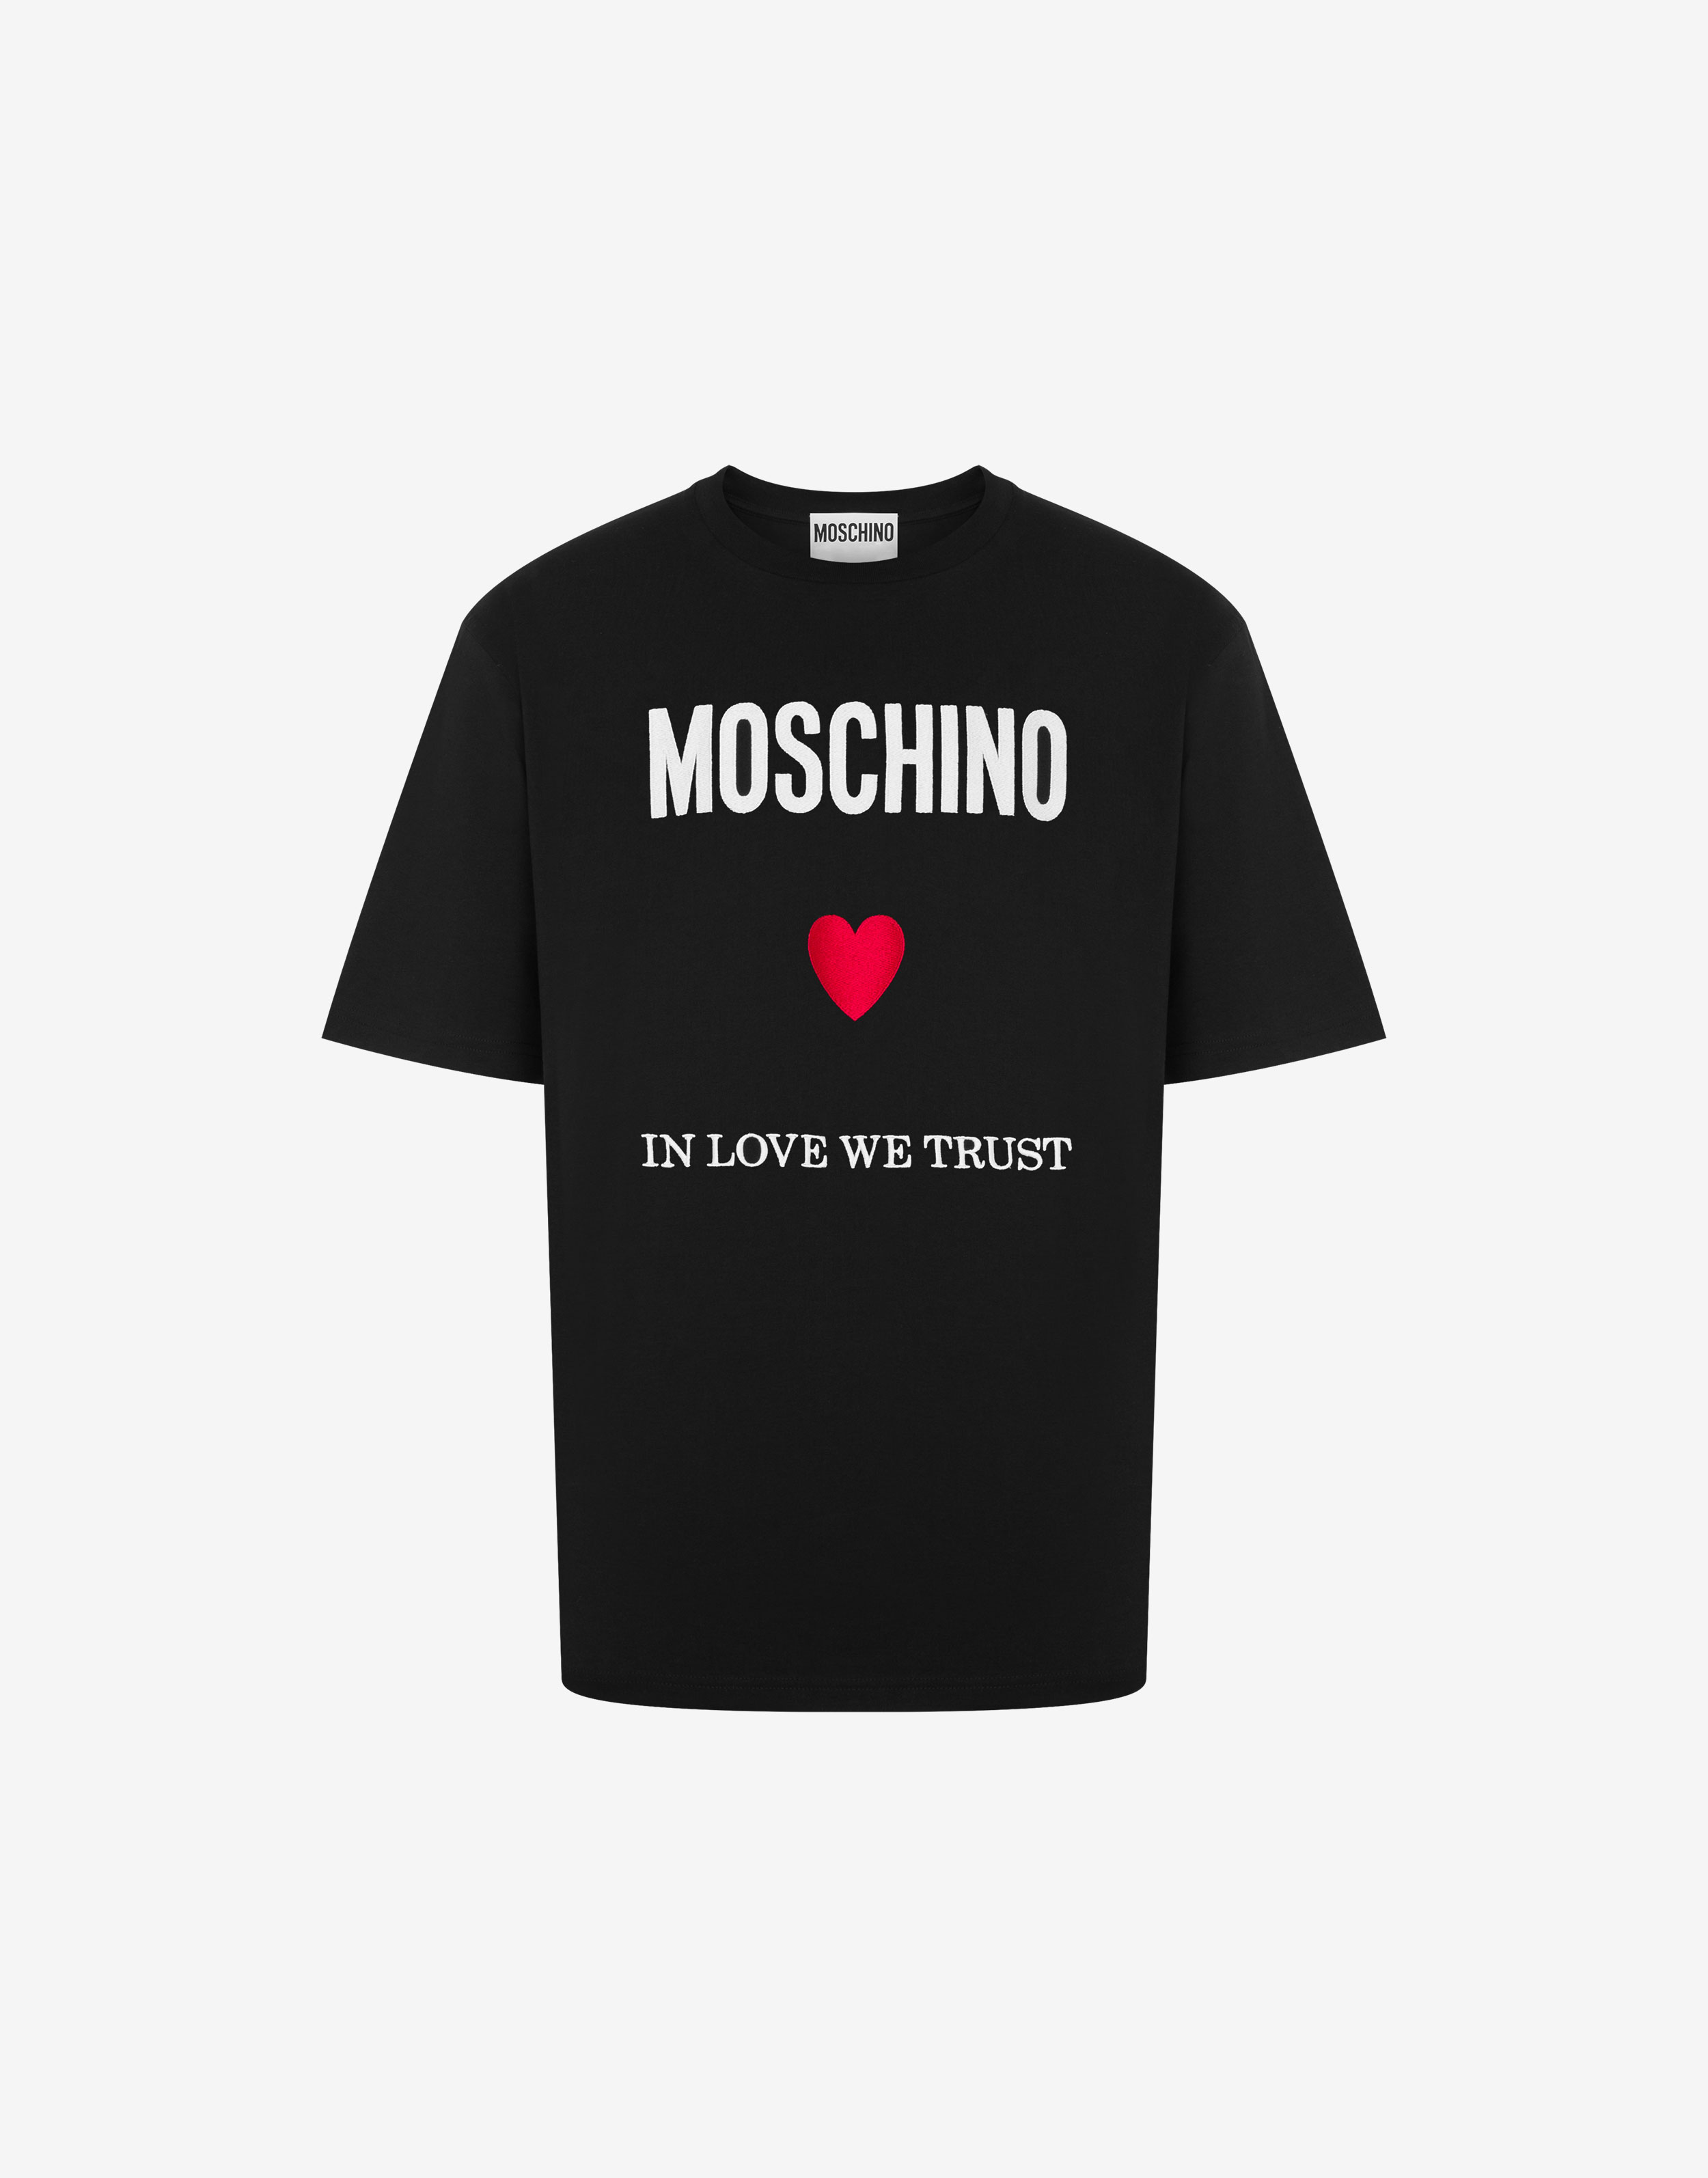  MOSCHINO Moda de lujo para hombre V070152401555 camiseta negra